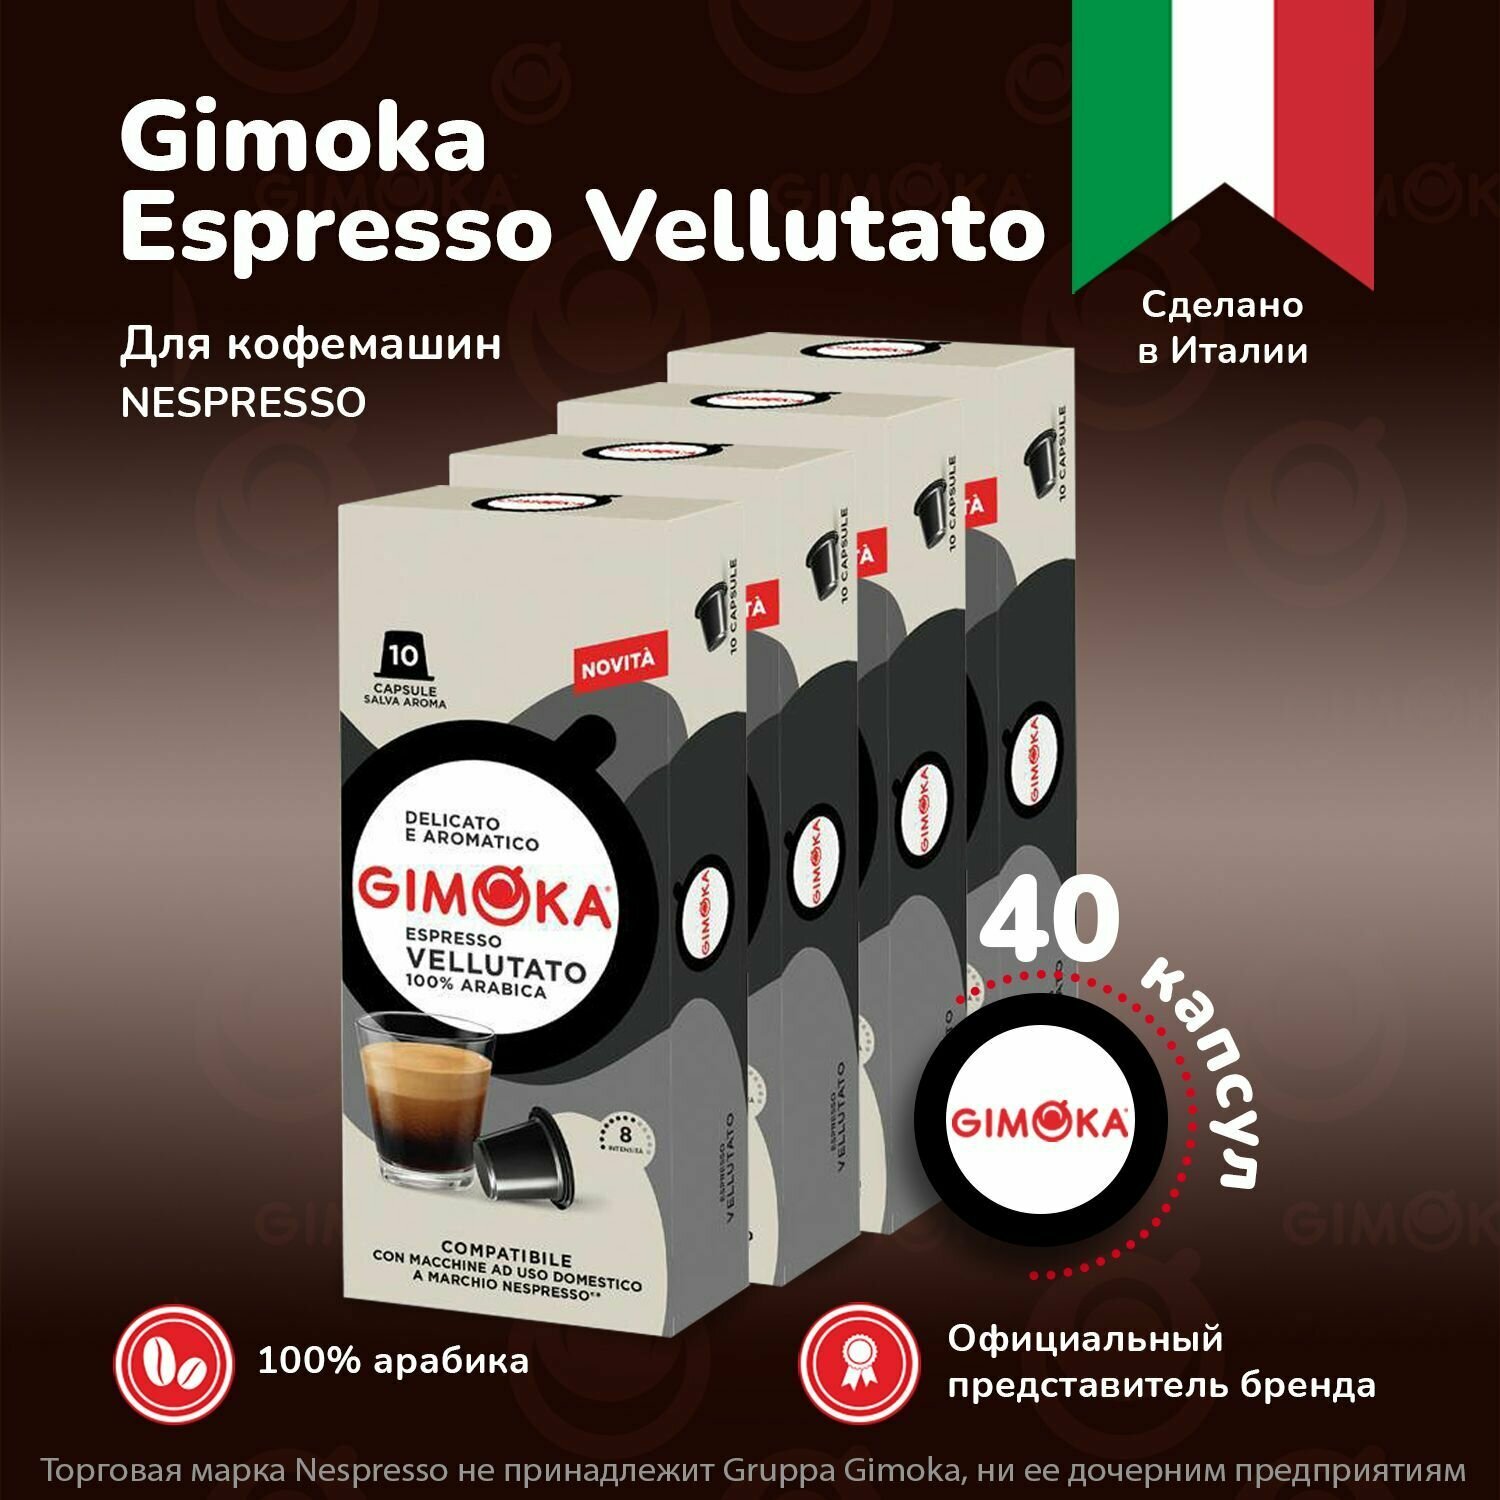 Кофе в капсулах Gimoka Vellutato, 10 шт, 4 упаковки / капсульный для Неспрессо